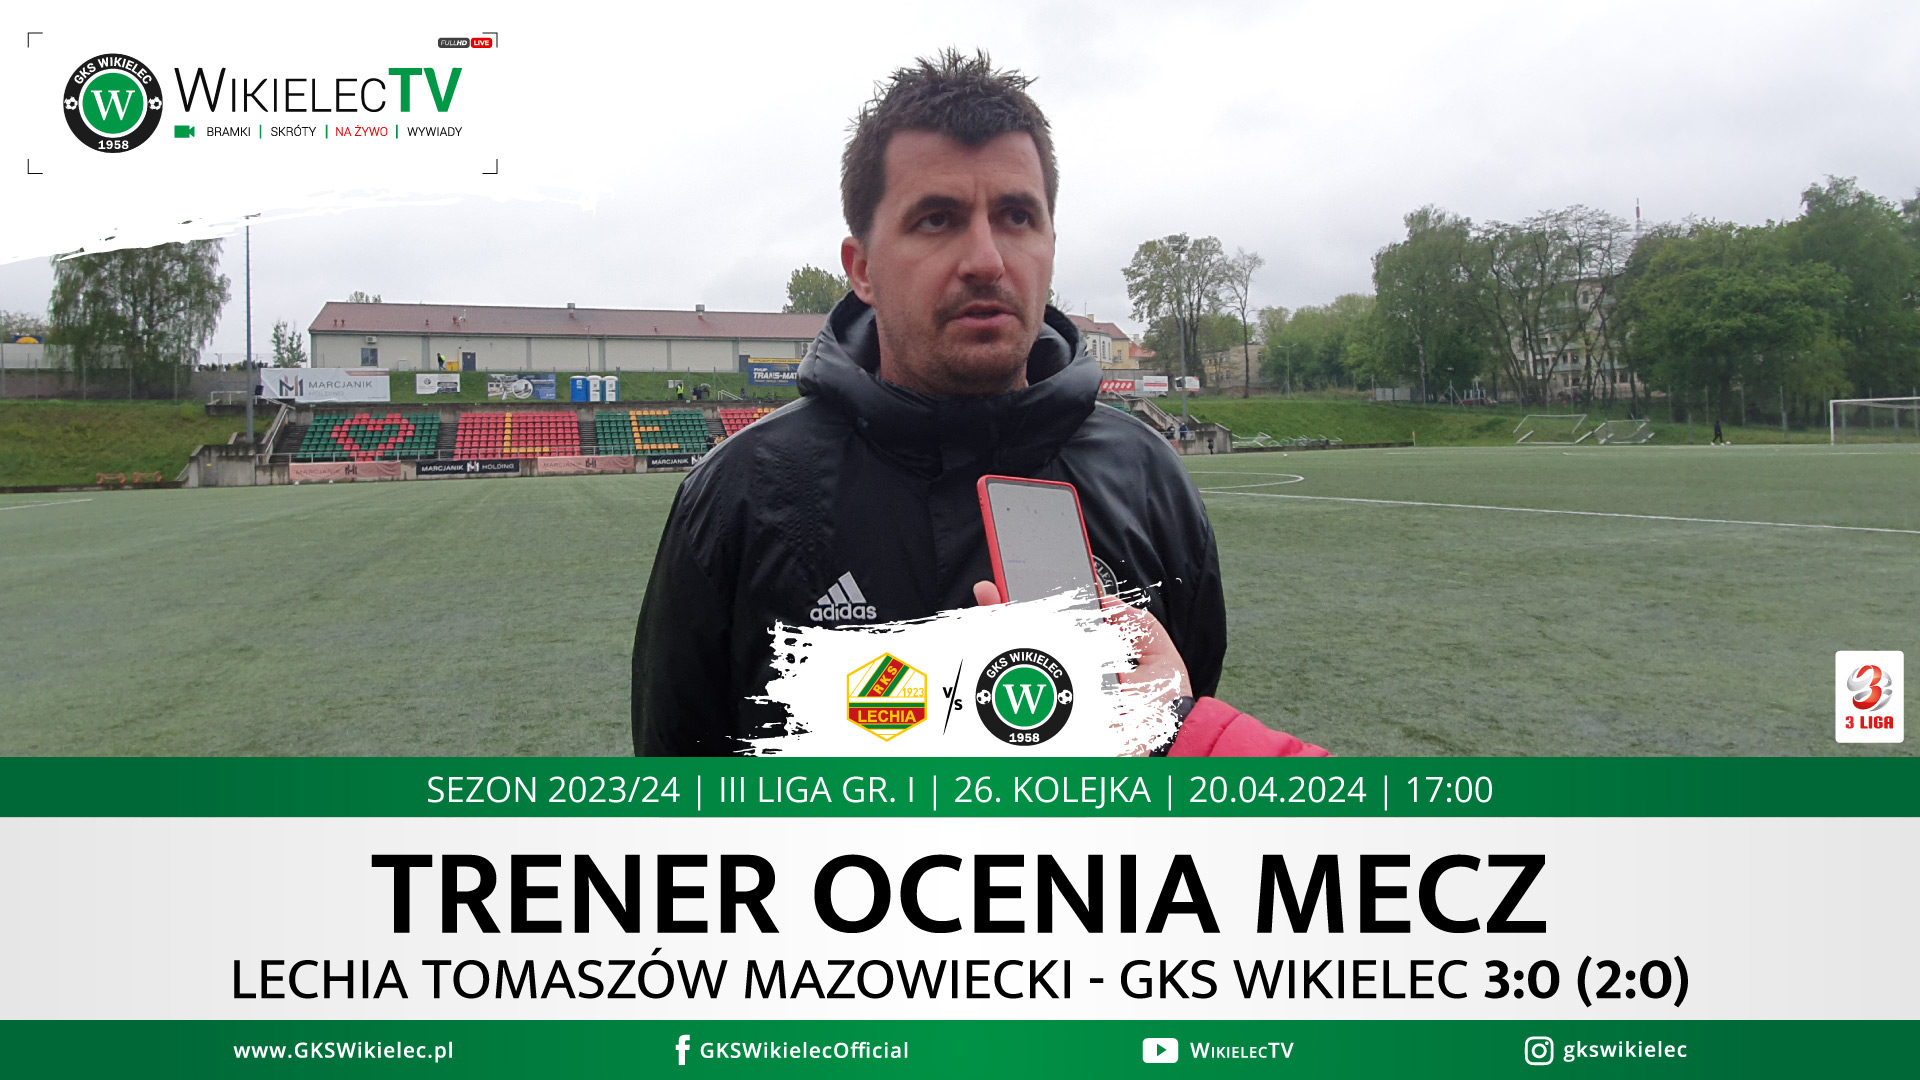 WikielecTV: Trener ocenia mecz z Lechią Tomaszów Mazowiecki